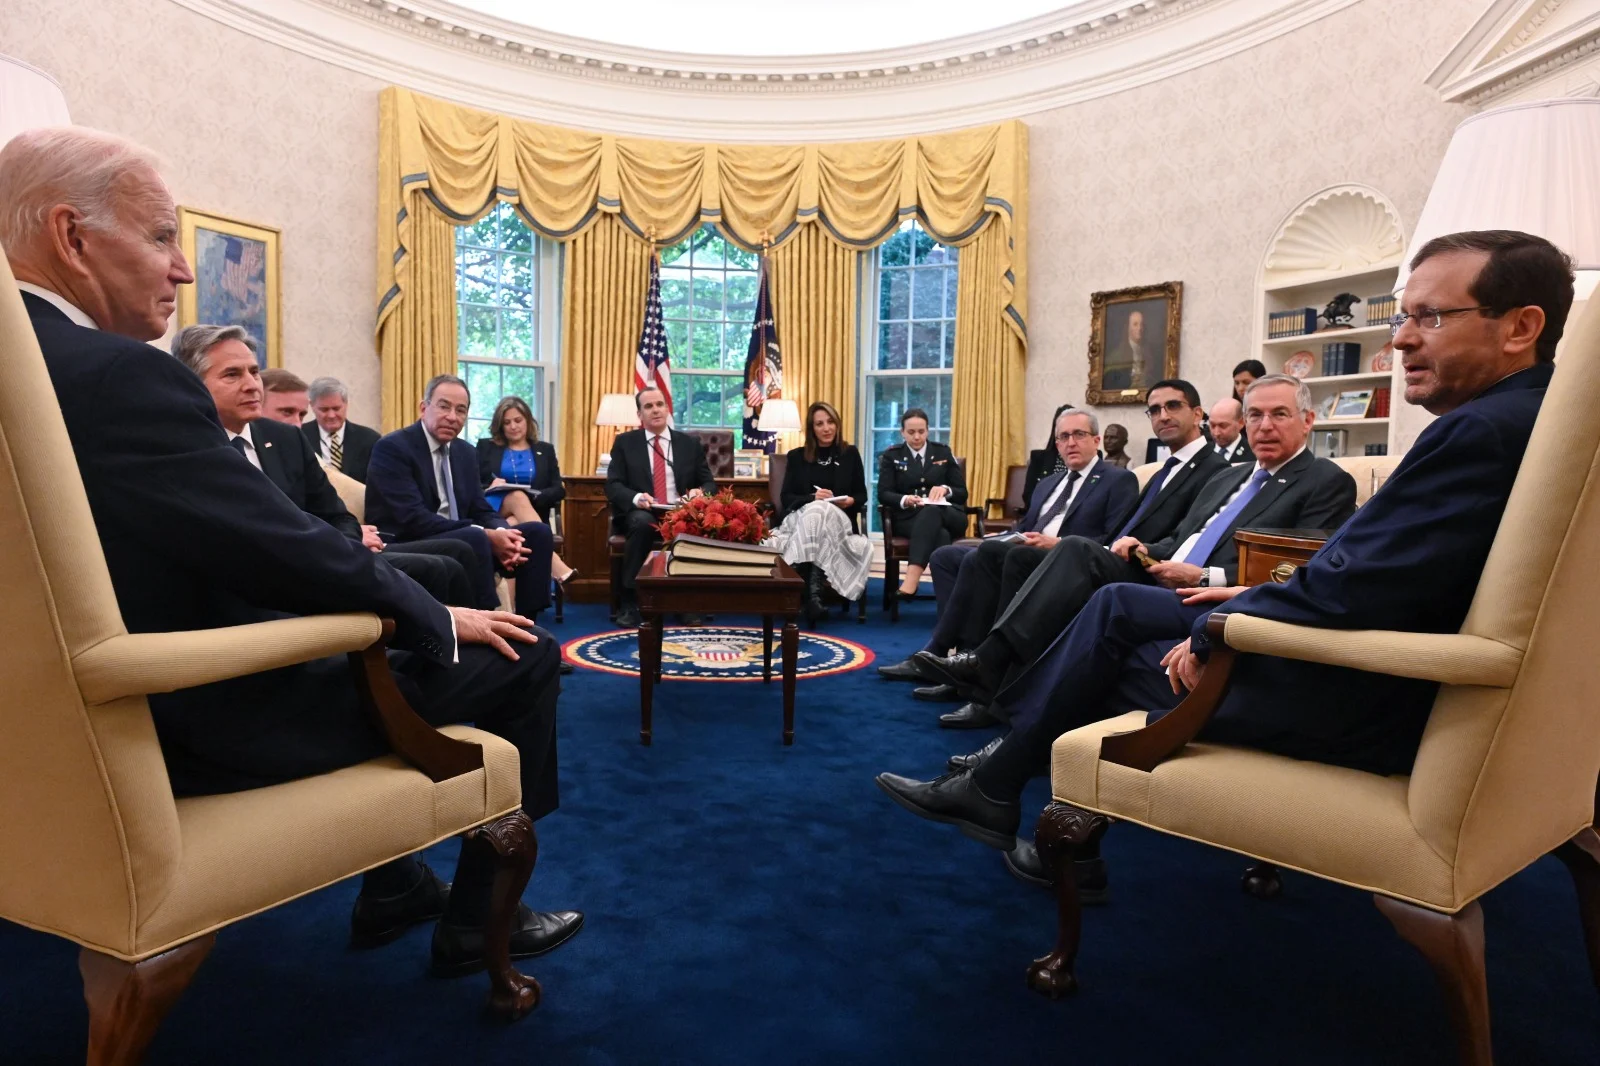 פגישת הרצוג ביידן בבית הלבן